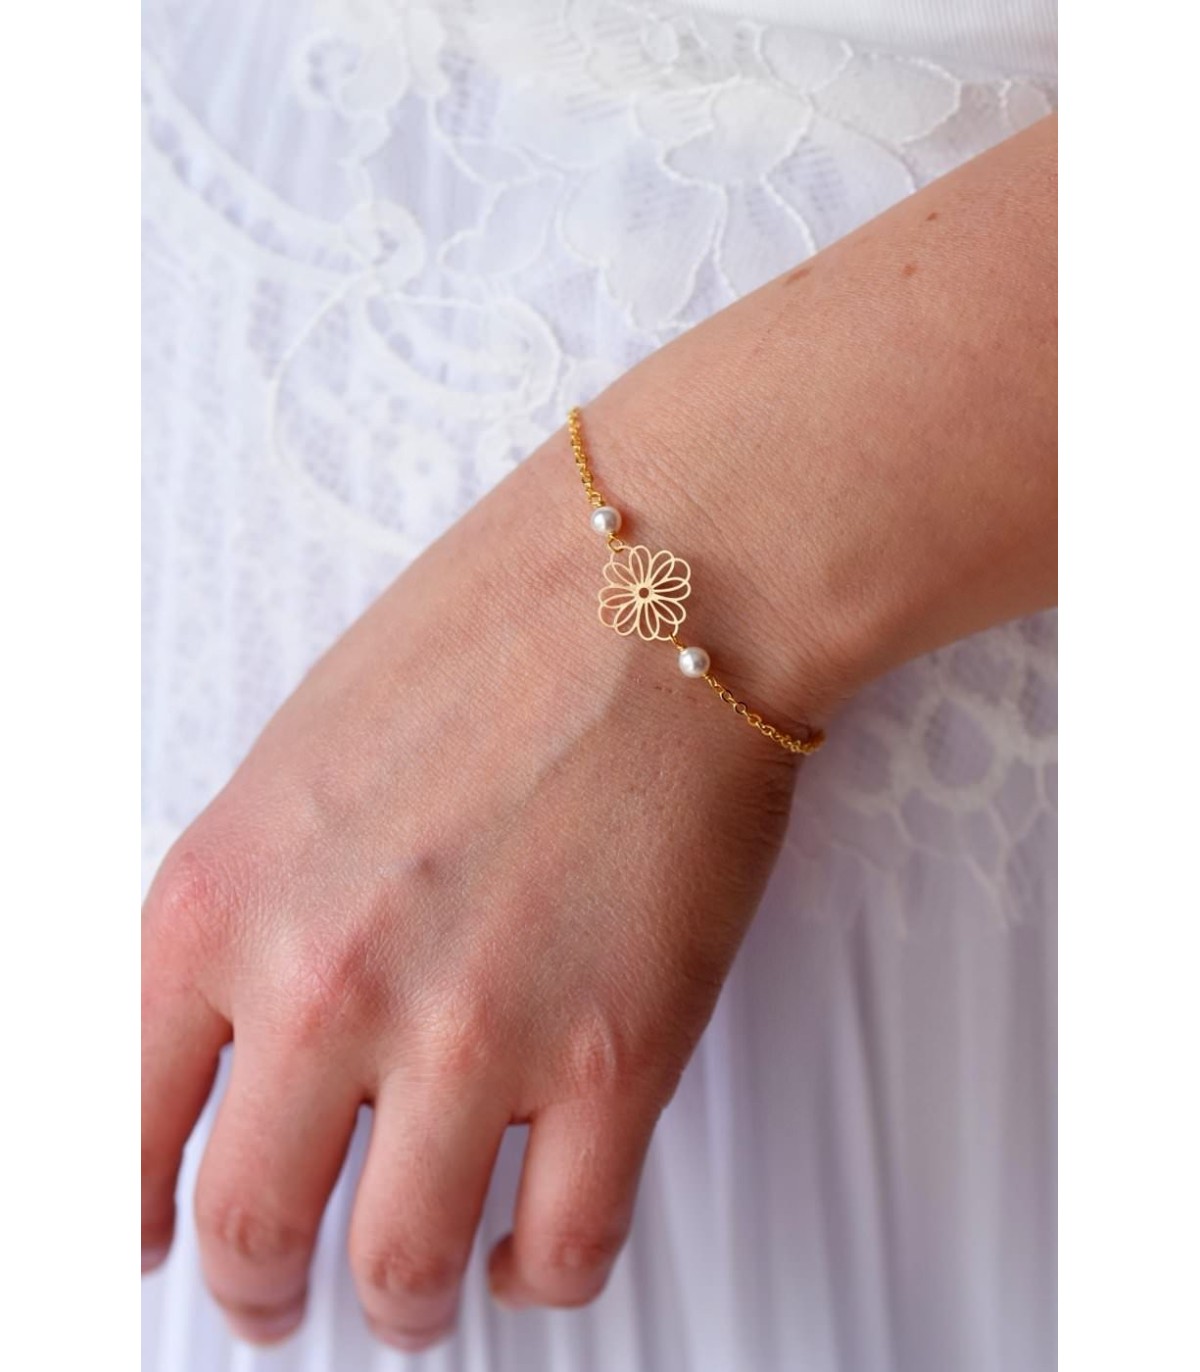 Bracelet de mariage fleuri modèle Daisy avec perles et chaine plaqué or.